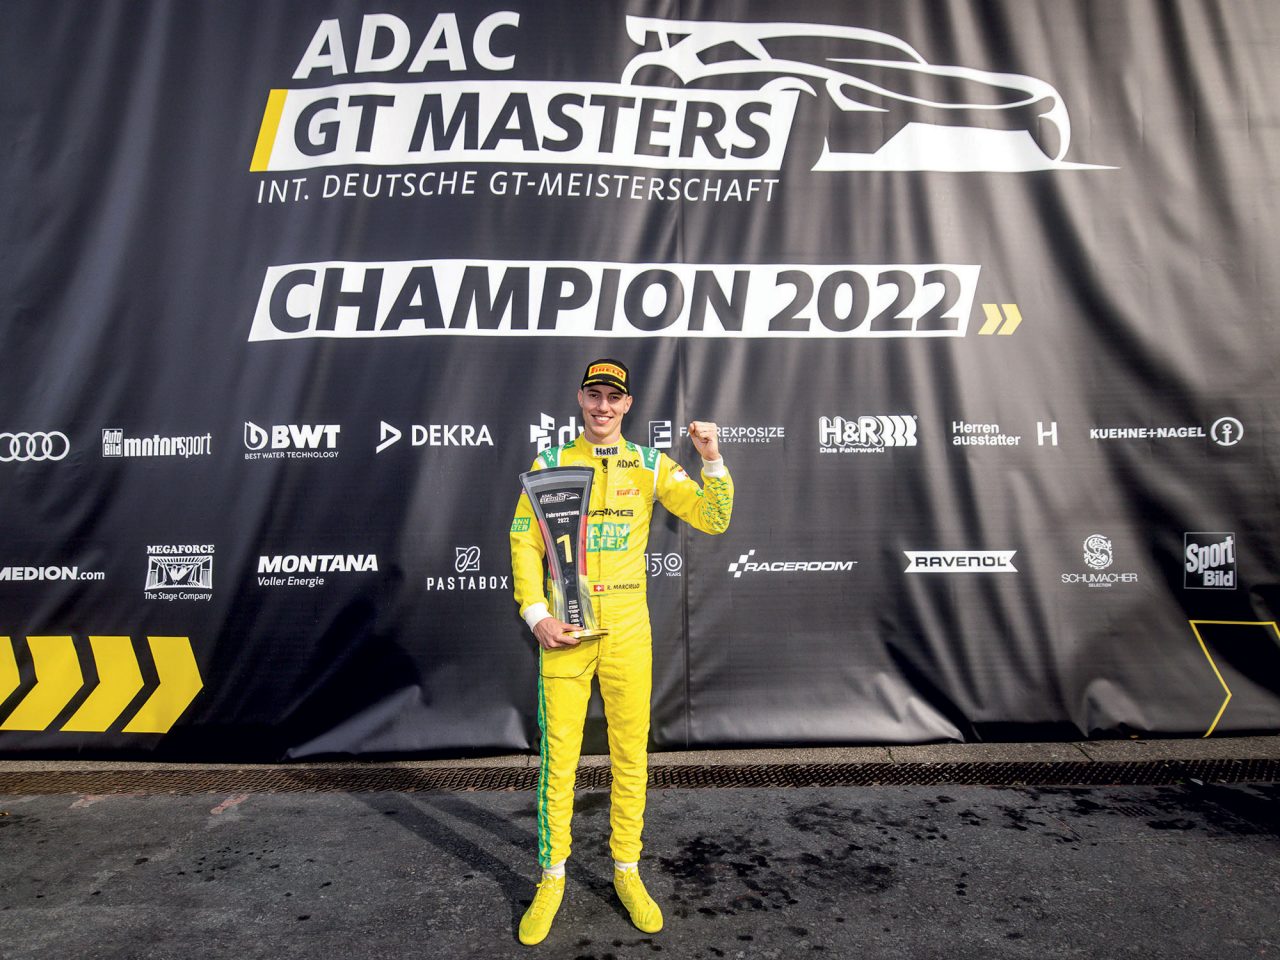 Il Campione ADAC GT Master Raffaele Marciello